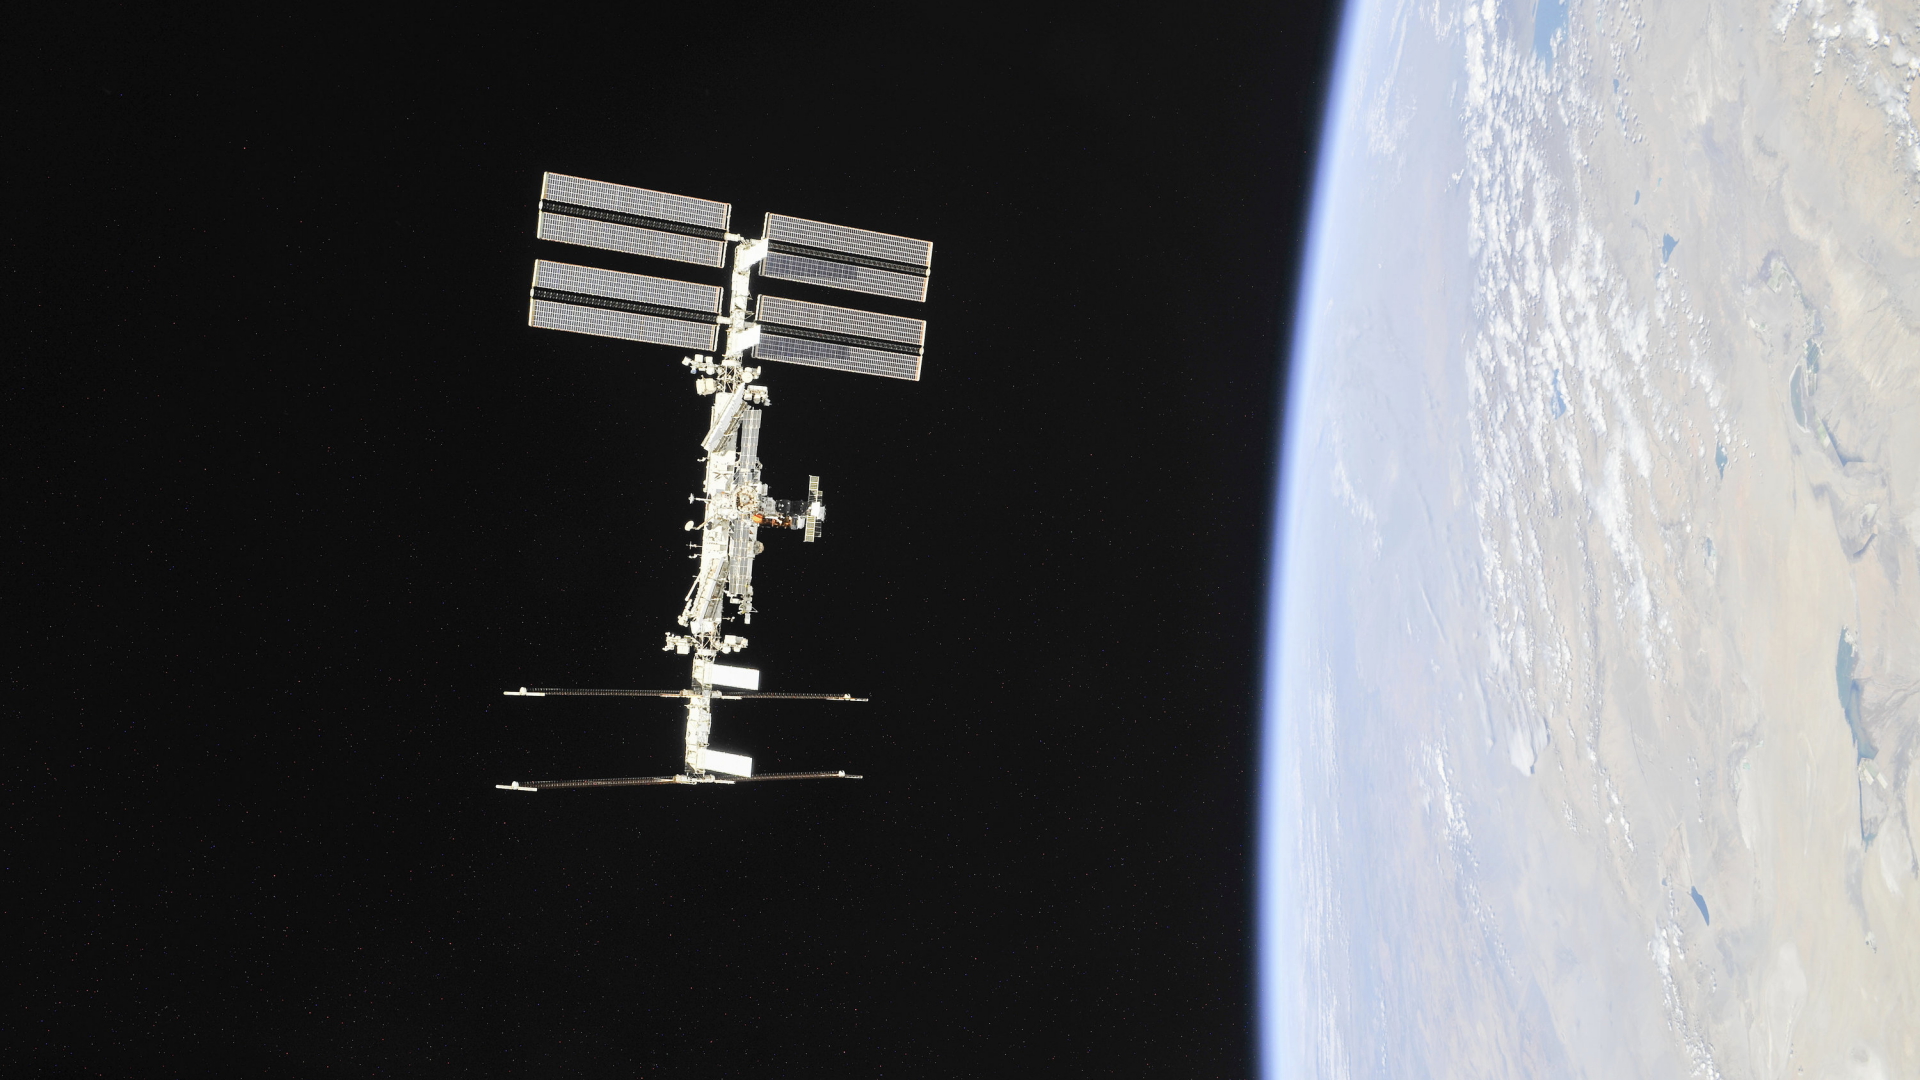 Internationale Raumstation ist in einem Erd-Orbit zu sehen